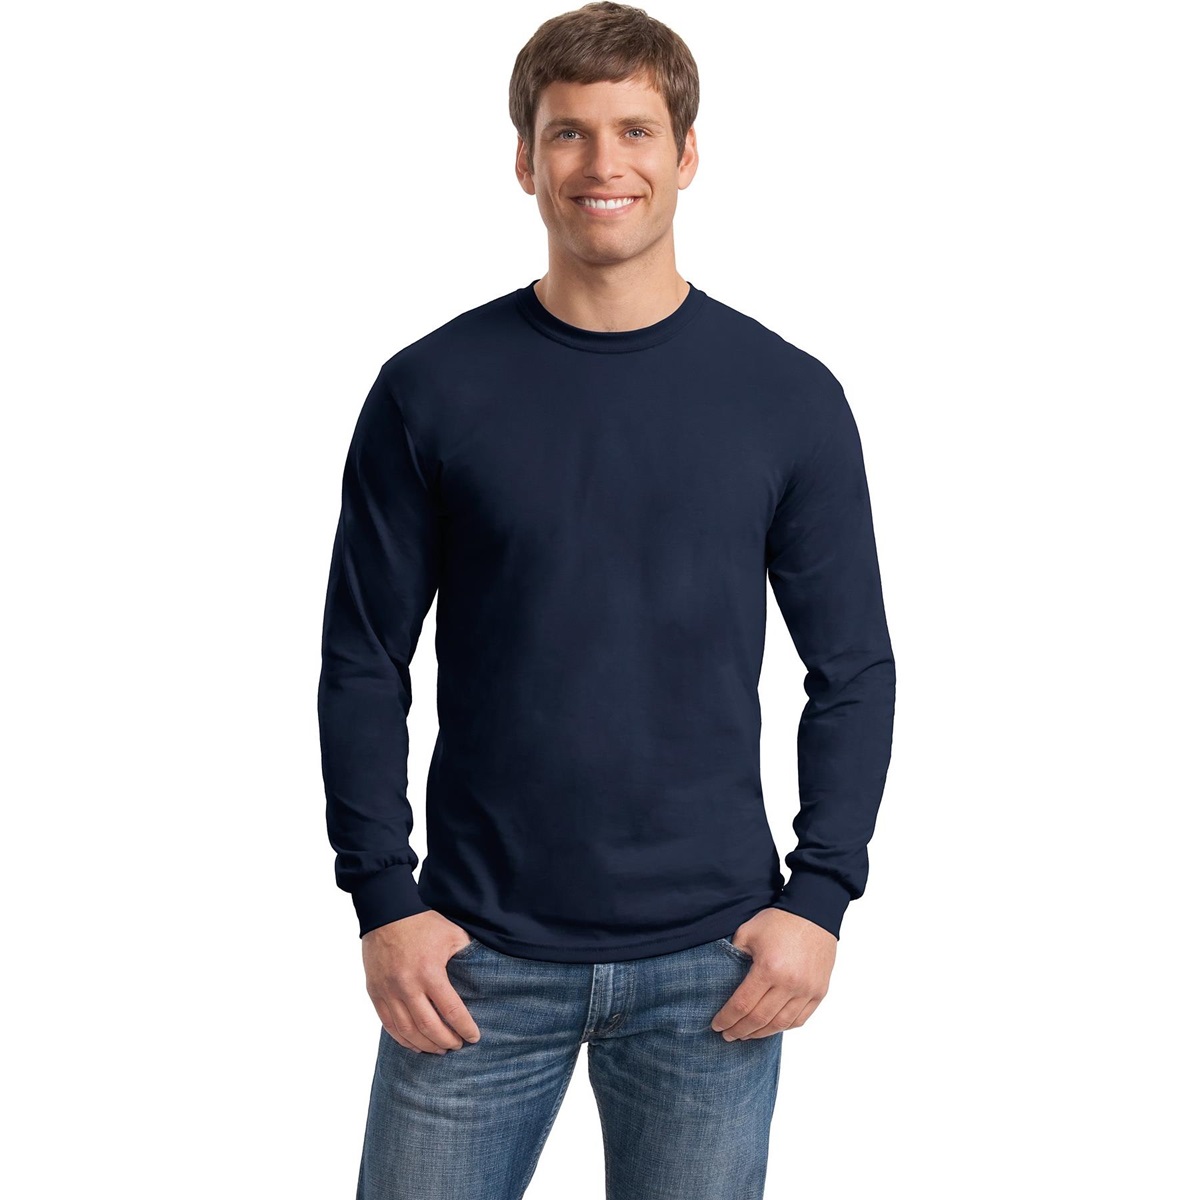 Gildan 5400 Heavy Cotton Long Sleeve T-Shirt - Navy | FullSource.com